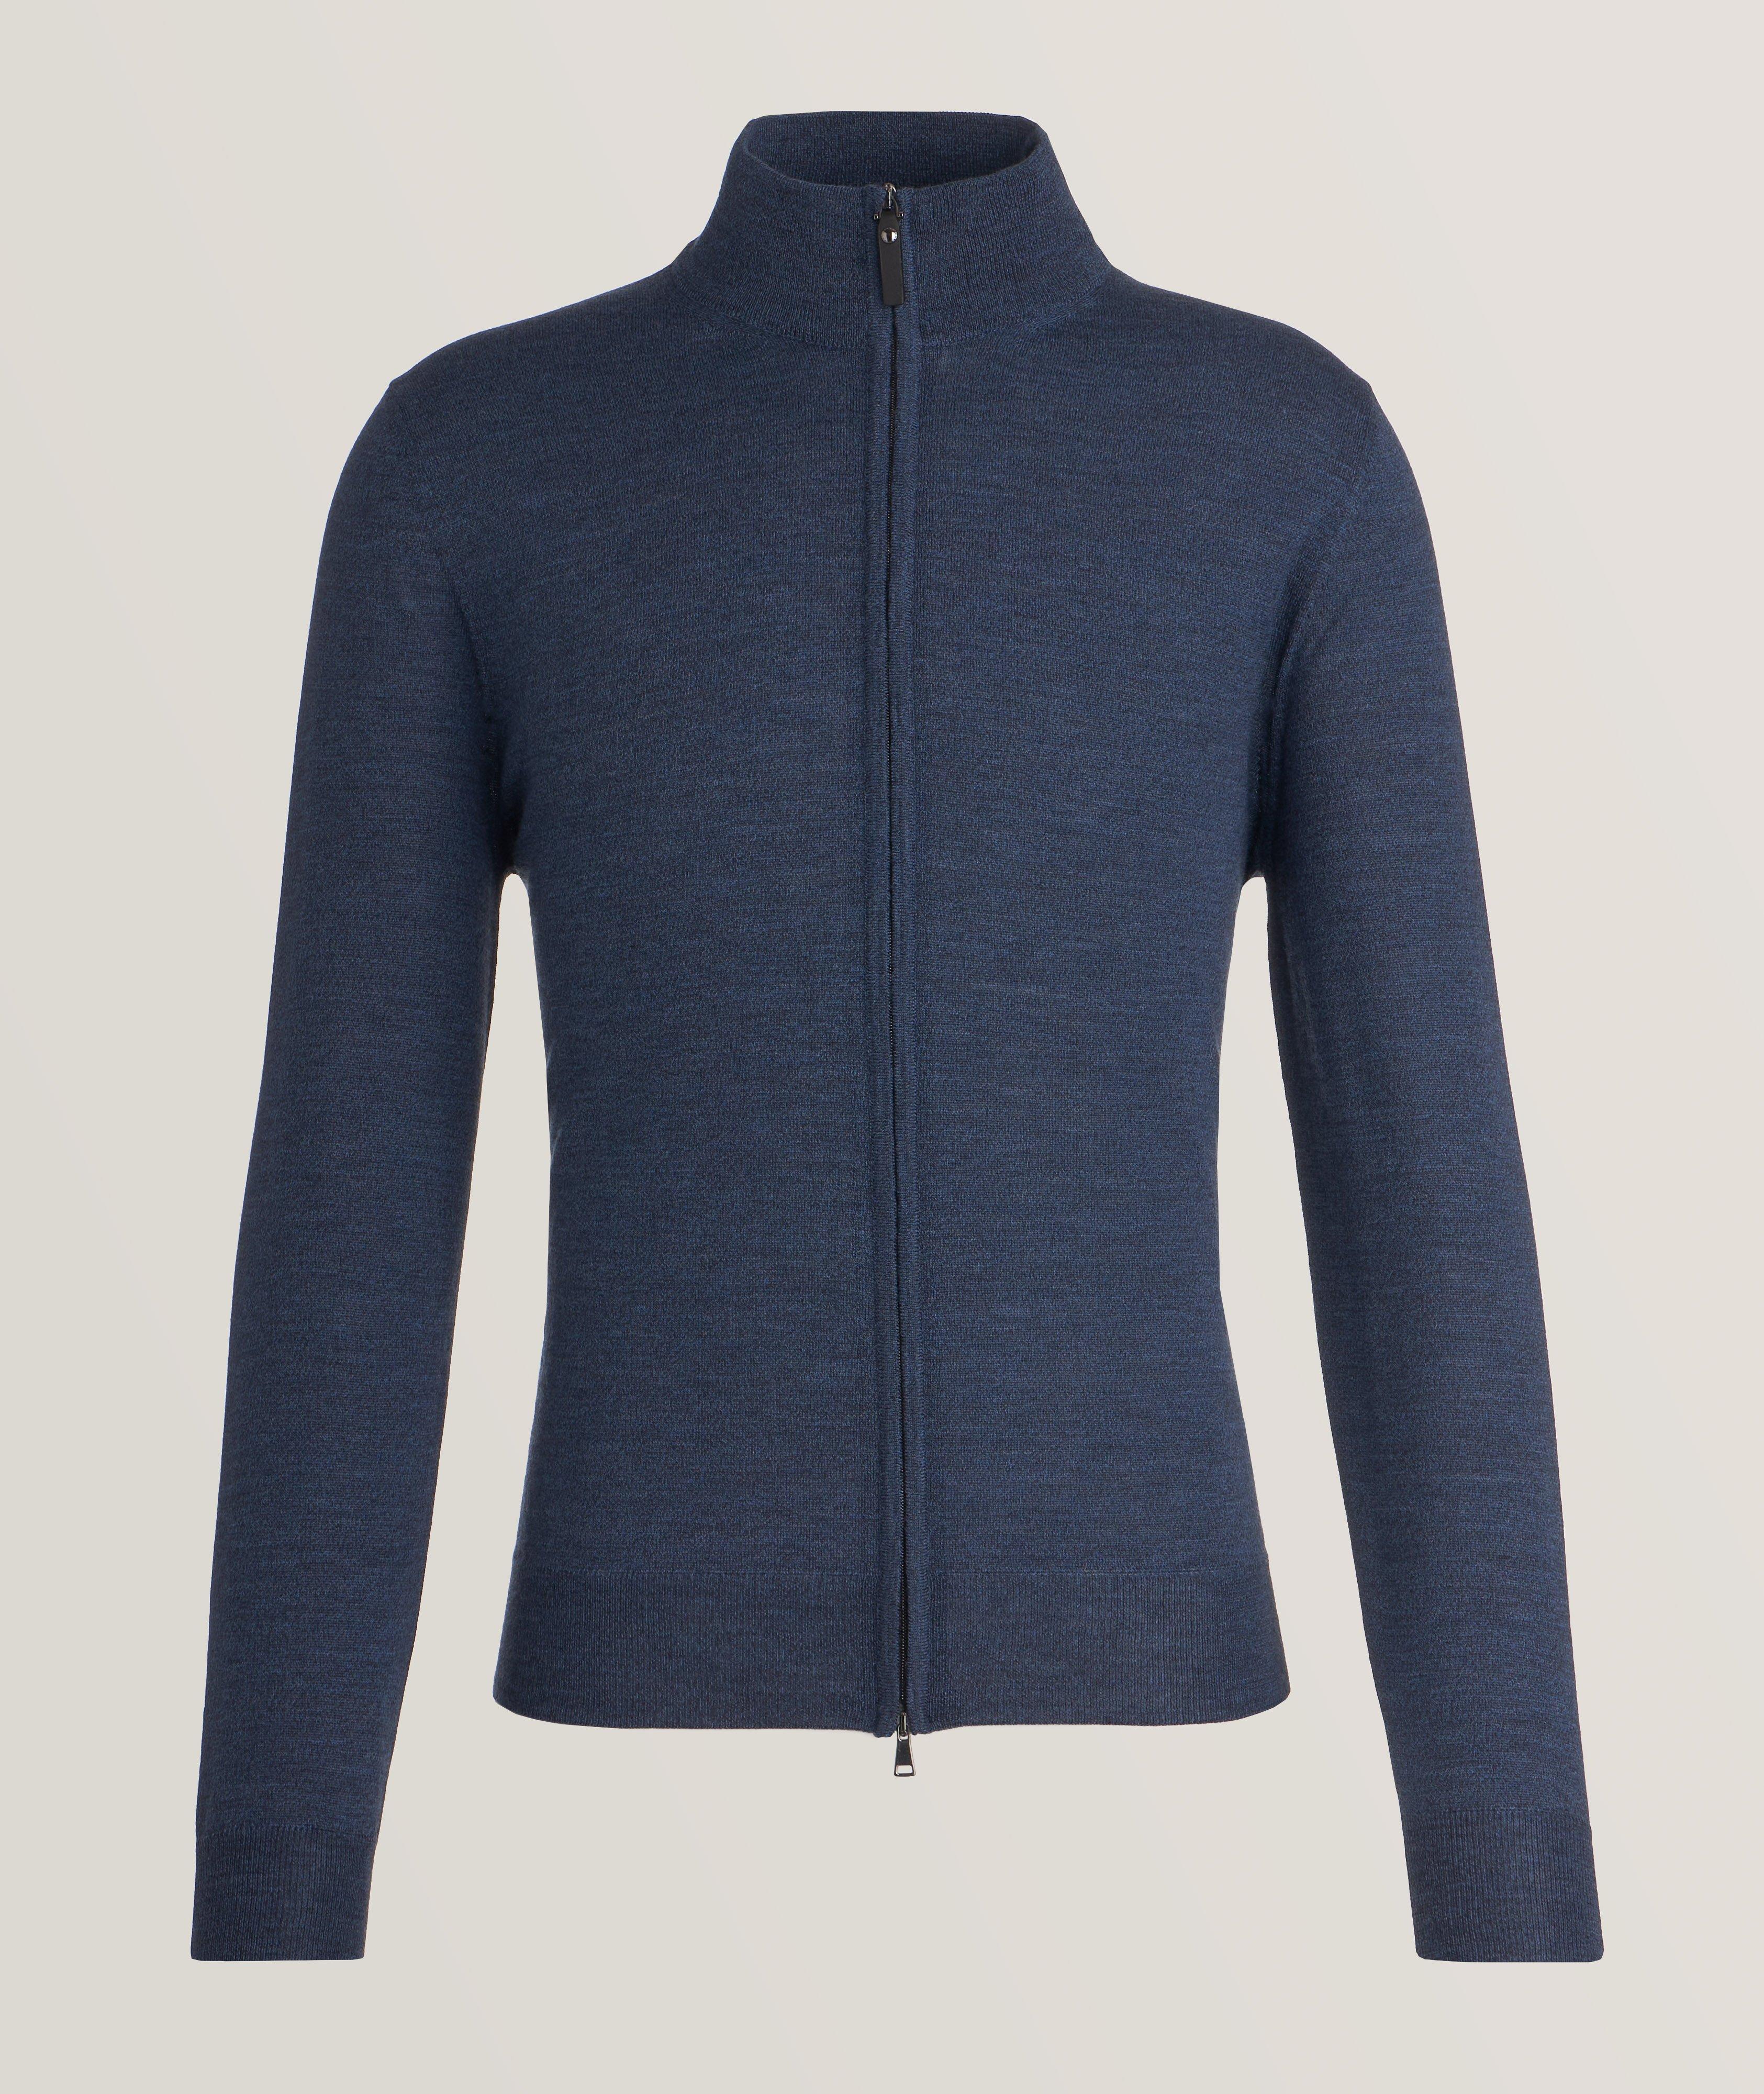 Merino Wool Full-Zip Sweater image 0